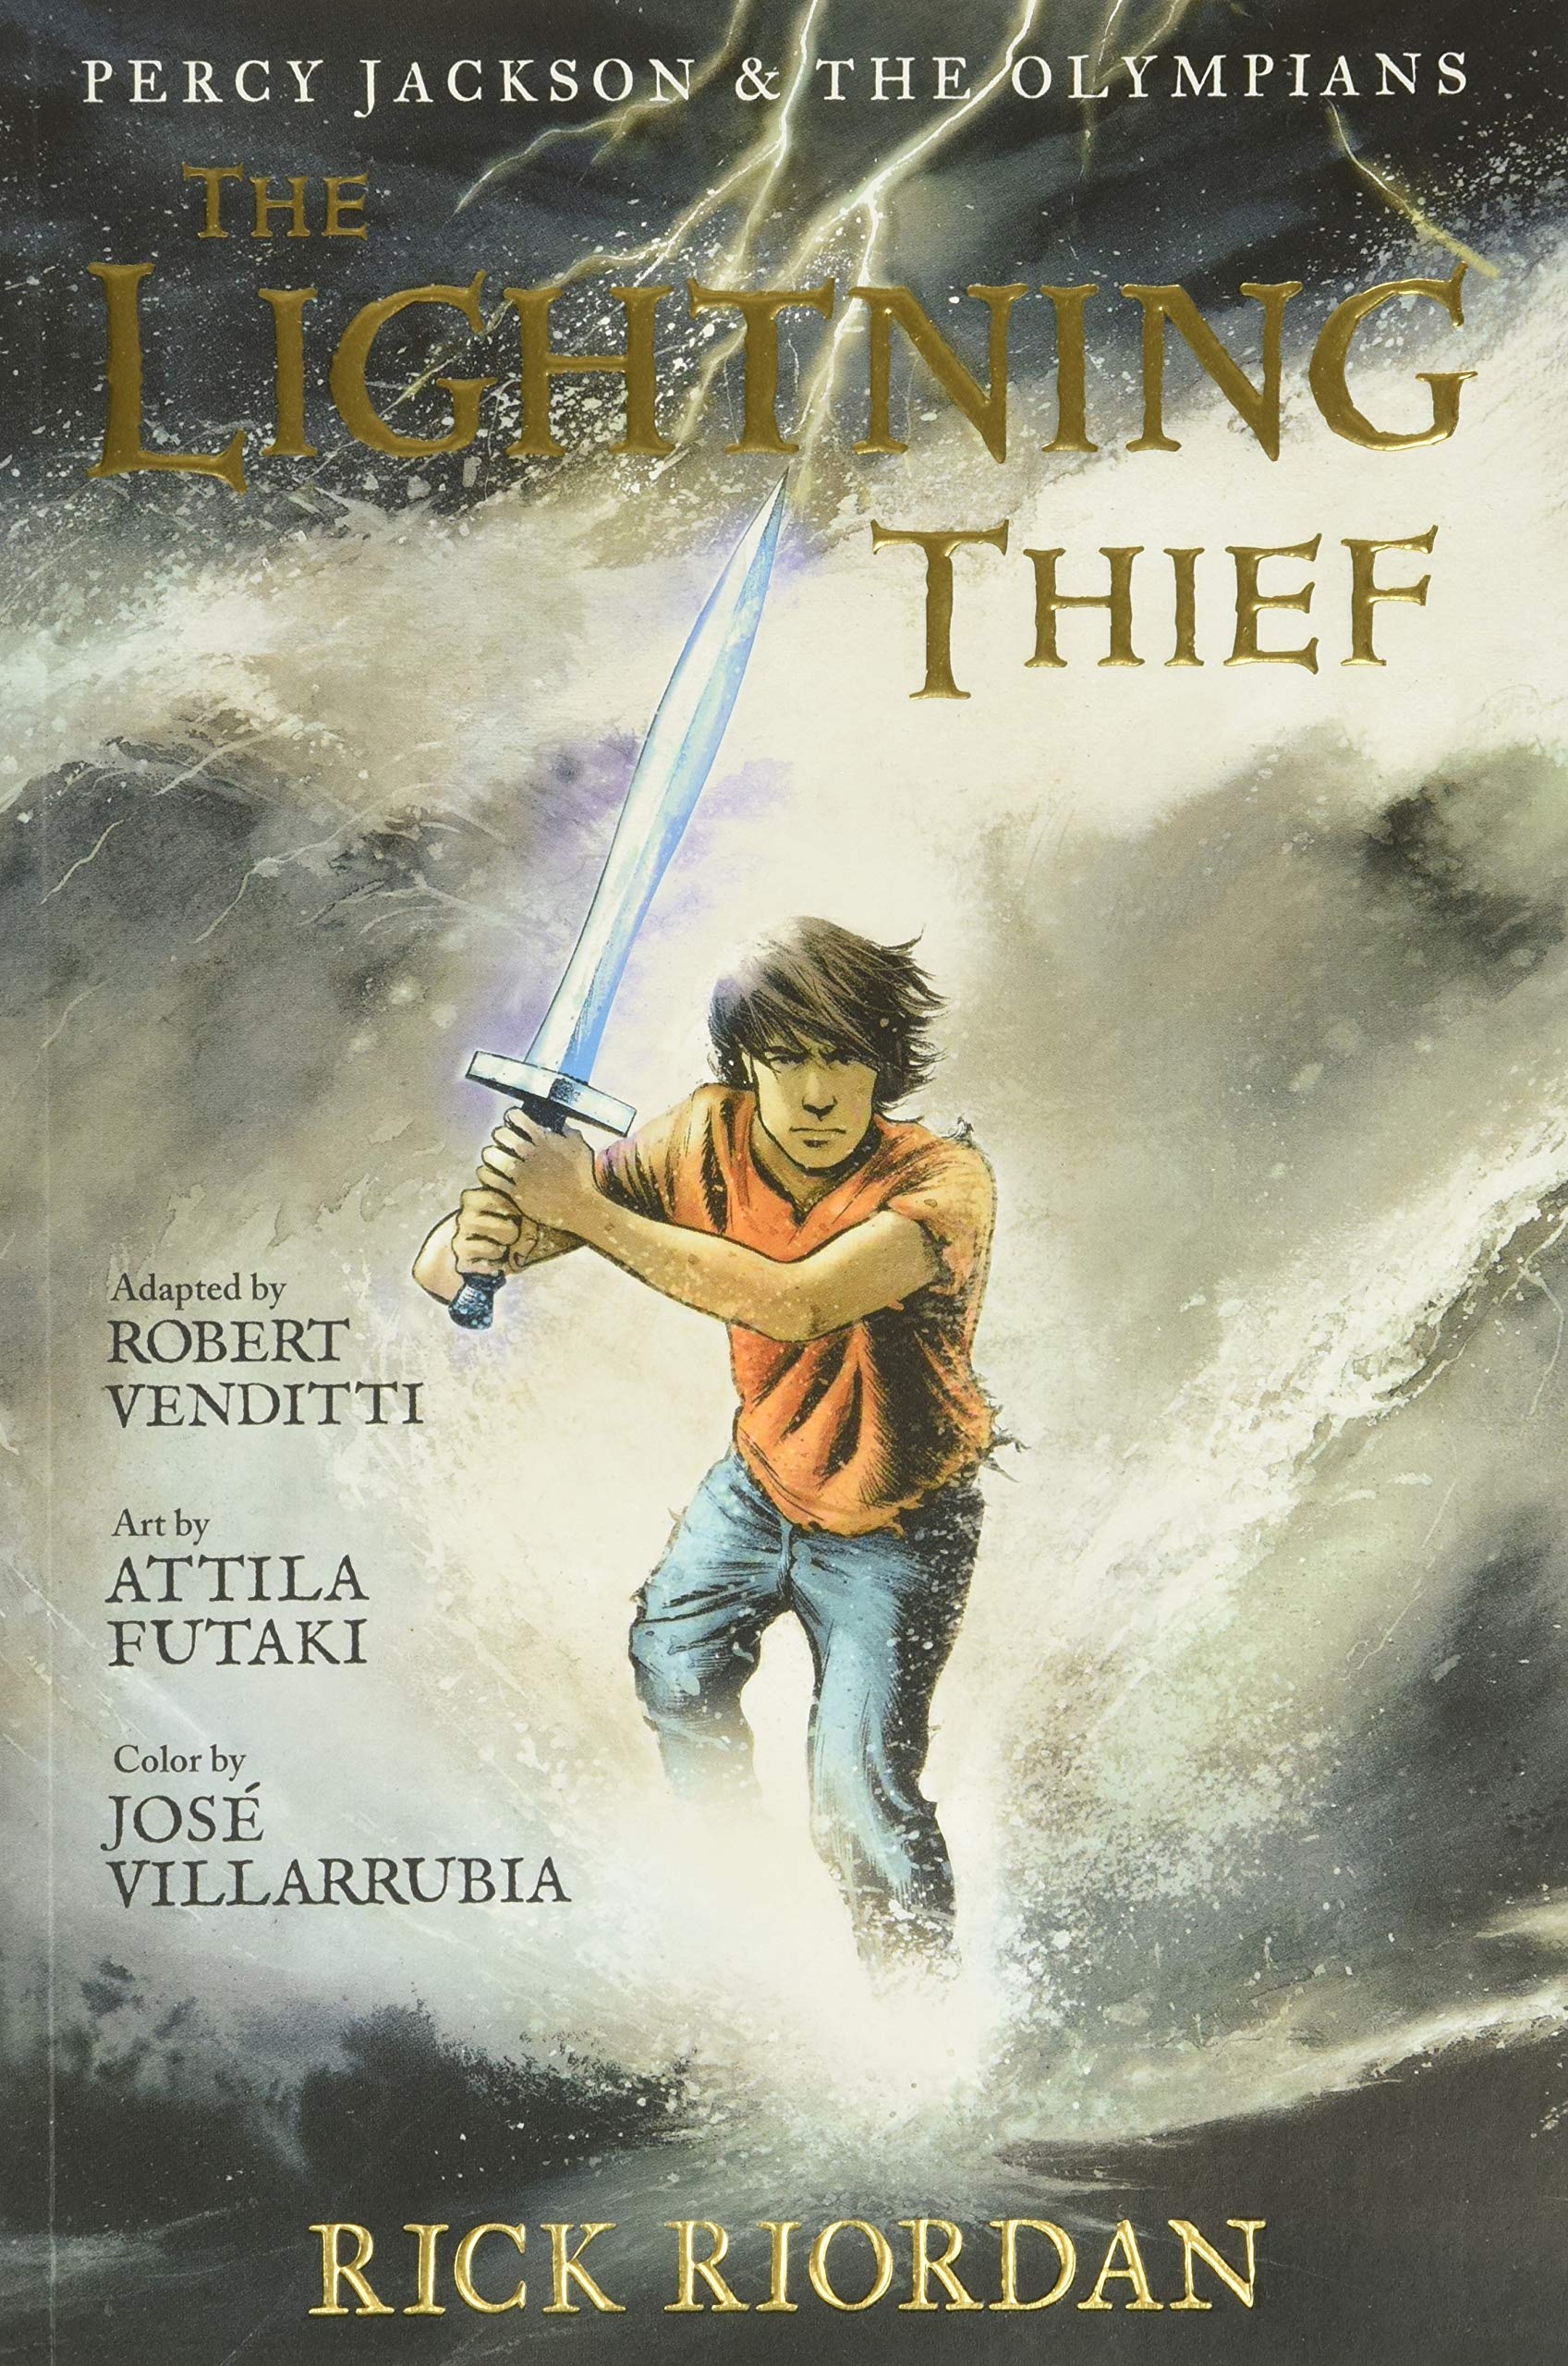 [중고] The Lightning Thief (Paperback)